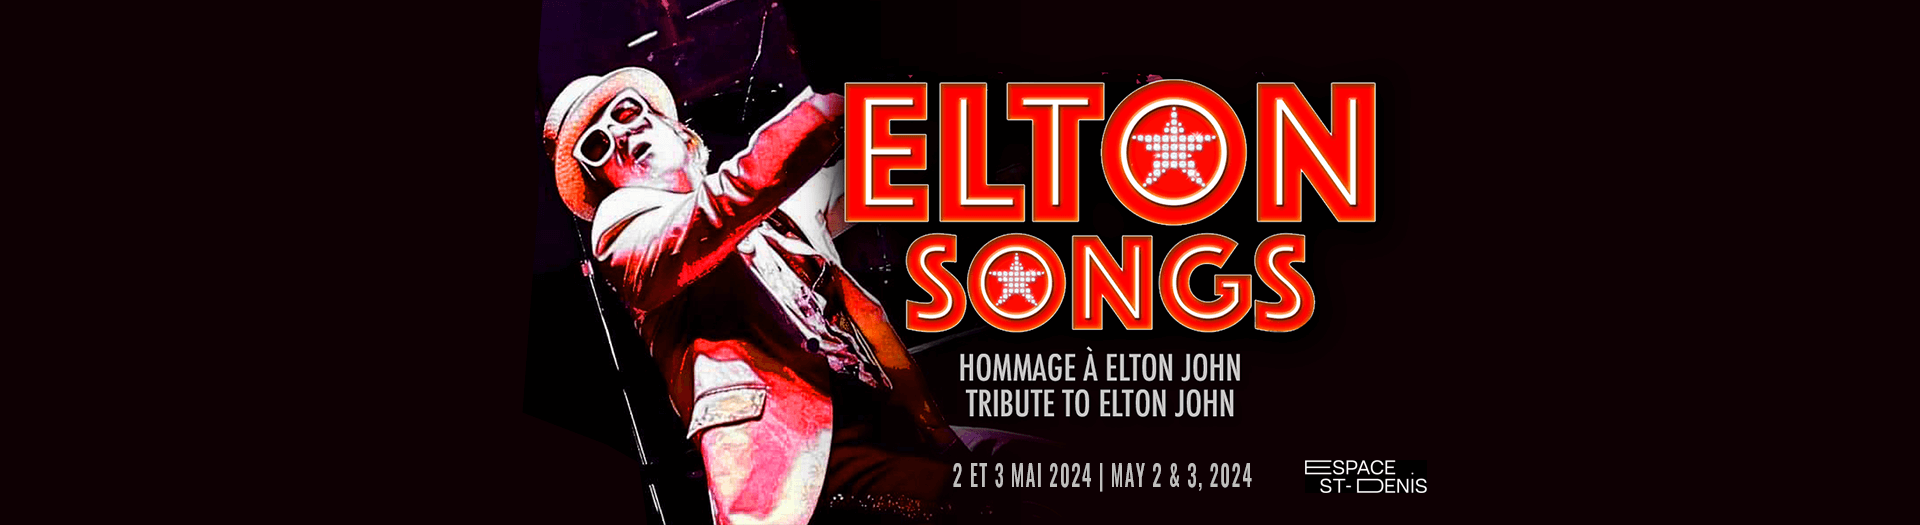 Elton Song, Studio-Cabaret - Espace St-Denis, Montréal